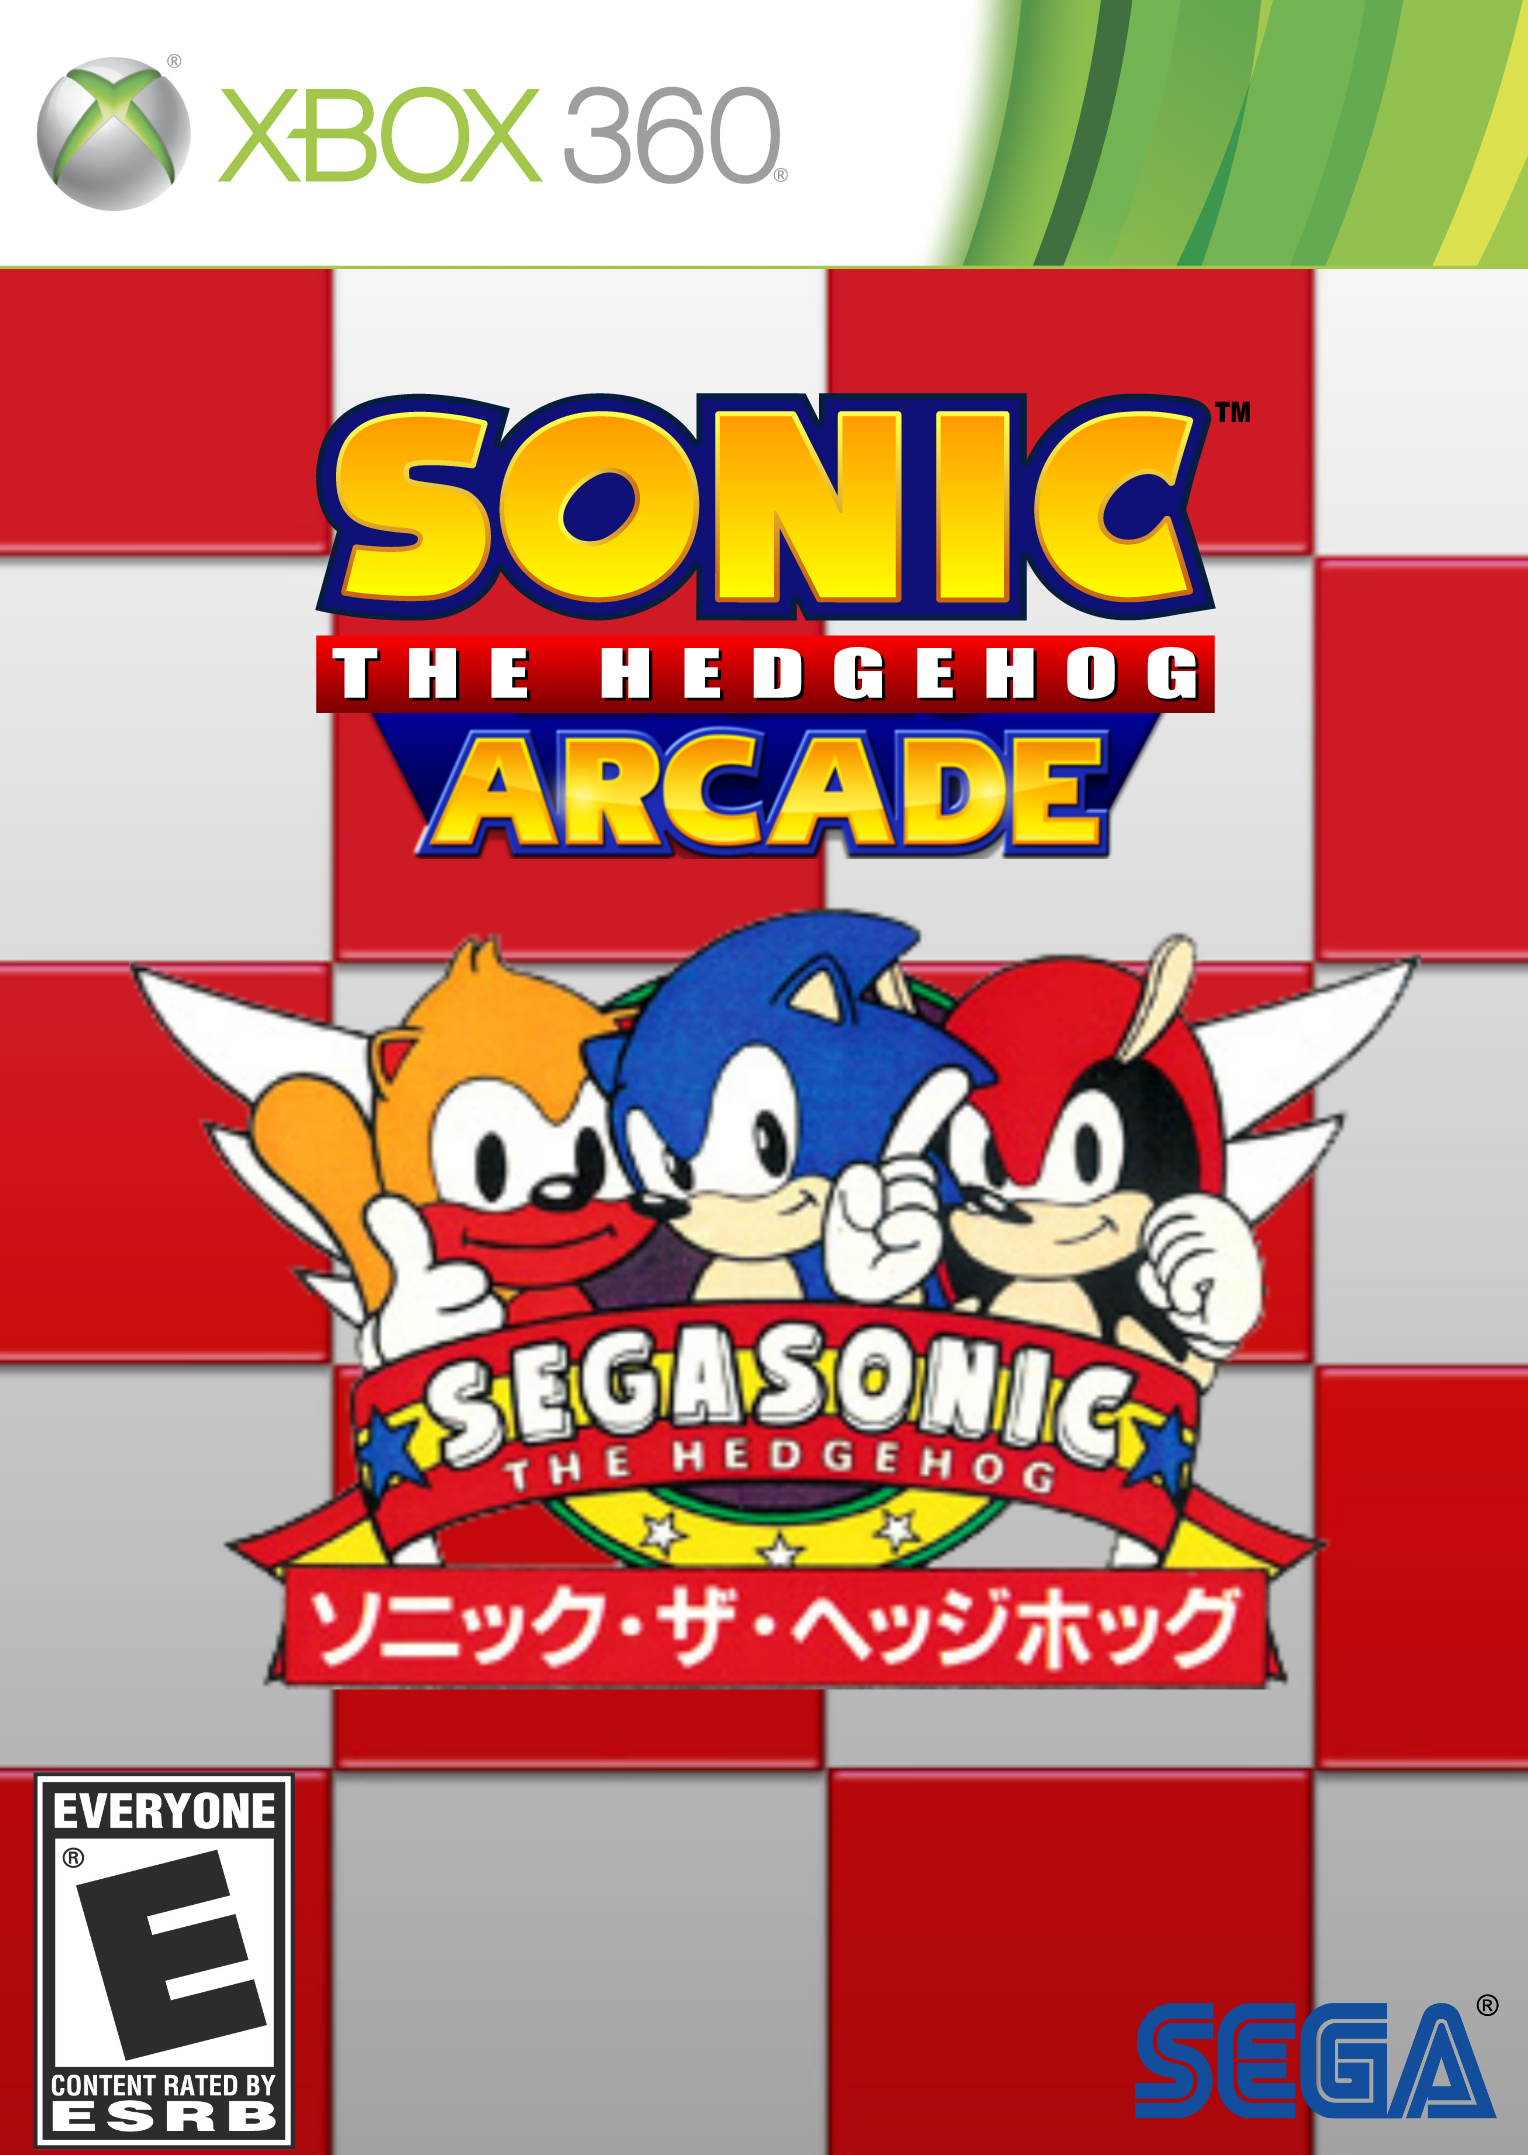 Sonic the Hedgehog Arcade - SEGASonic box cover